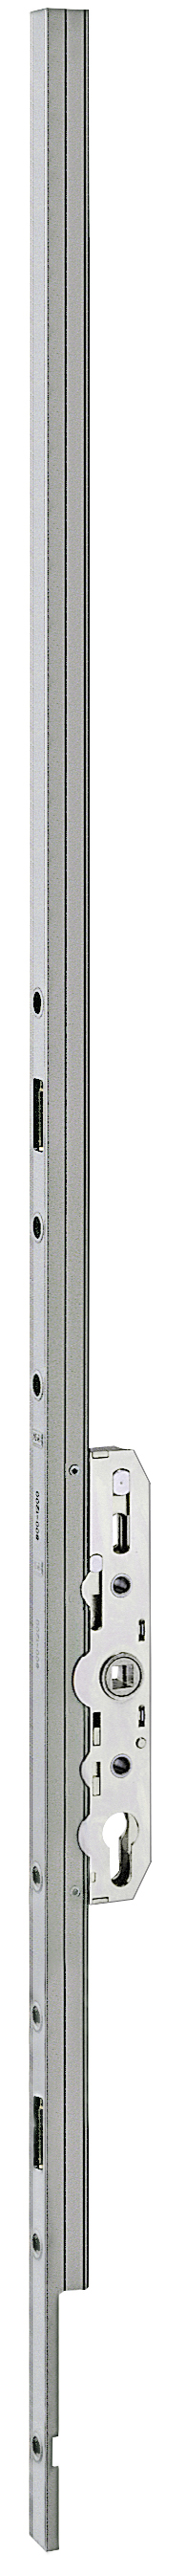 AGB -  Cremonese ALZANTE CLIMATECH per alzante scorrevole altezza maniglia fissa con chiusura a perni - gr / dim. 01 - entrata 37,5 - lbb/hbb 800 - 1200